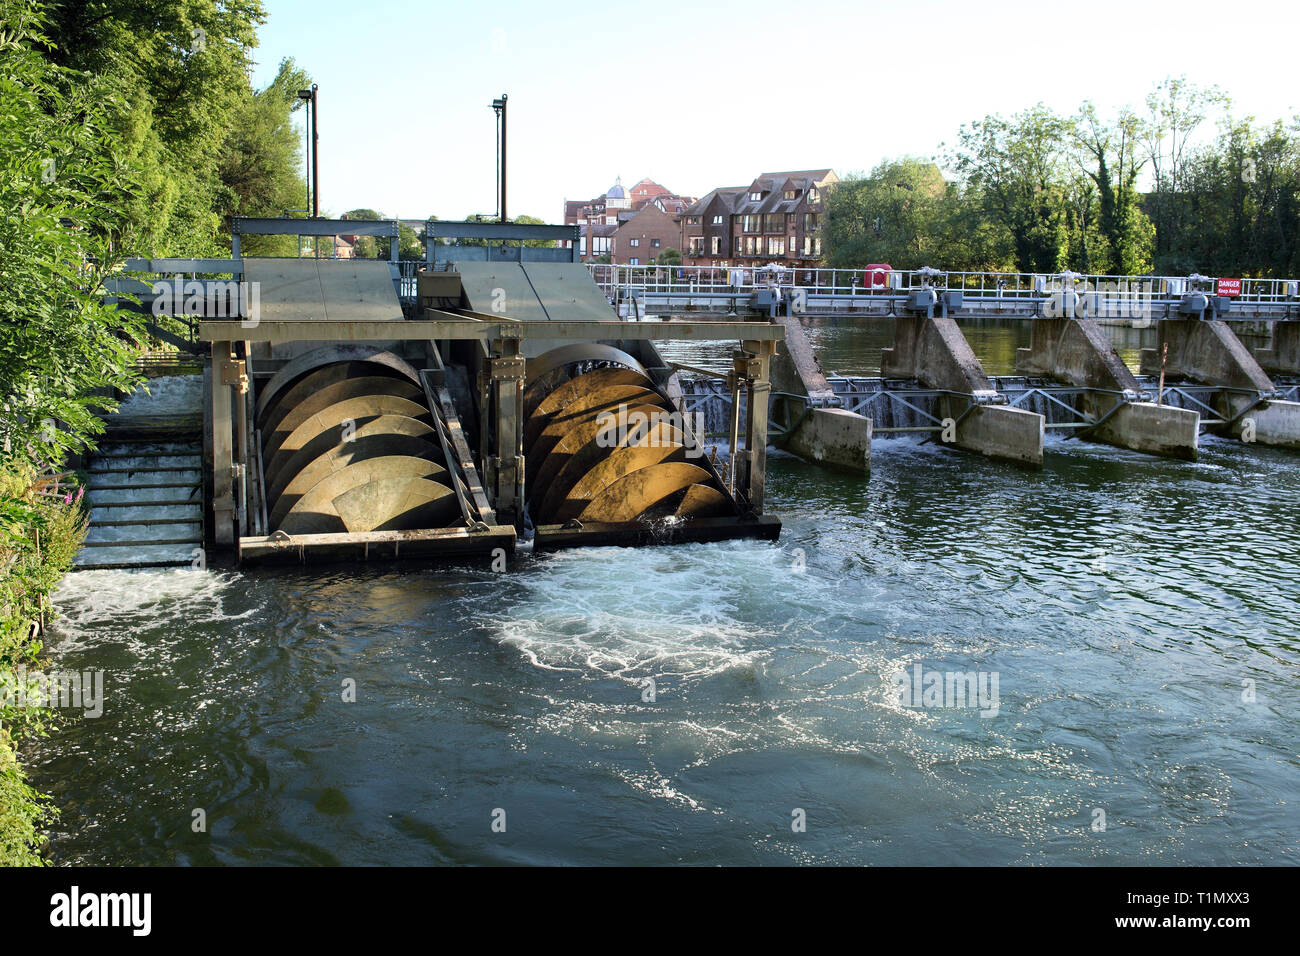 Romney Weir Schema idrostatico sul Fiume Tamigi a Windsor. L'elettricità è generata da due viti di Archimede che sono rivolti dall'acqua fluente. Foto Stock